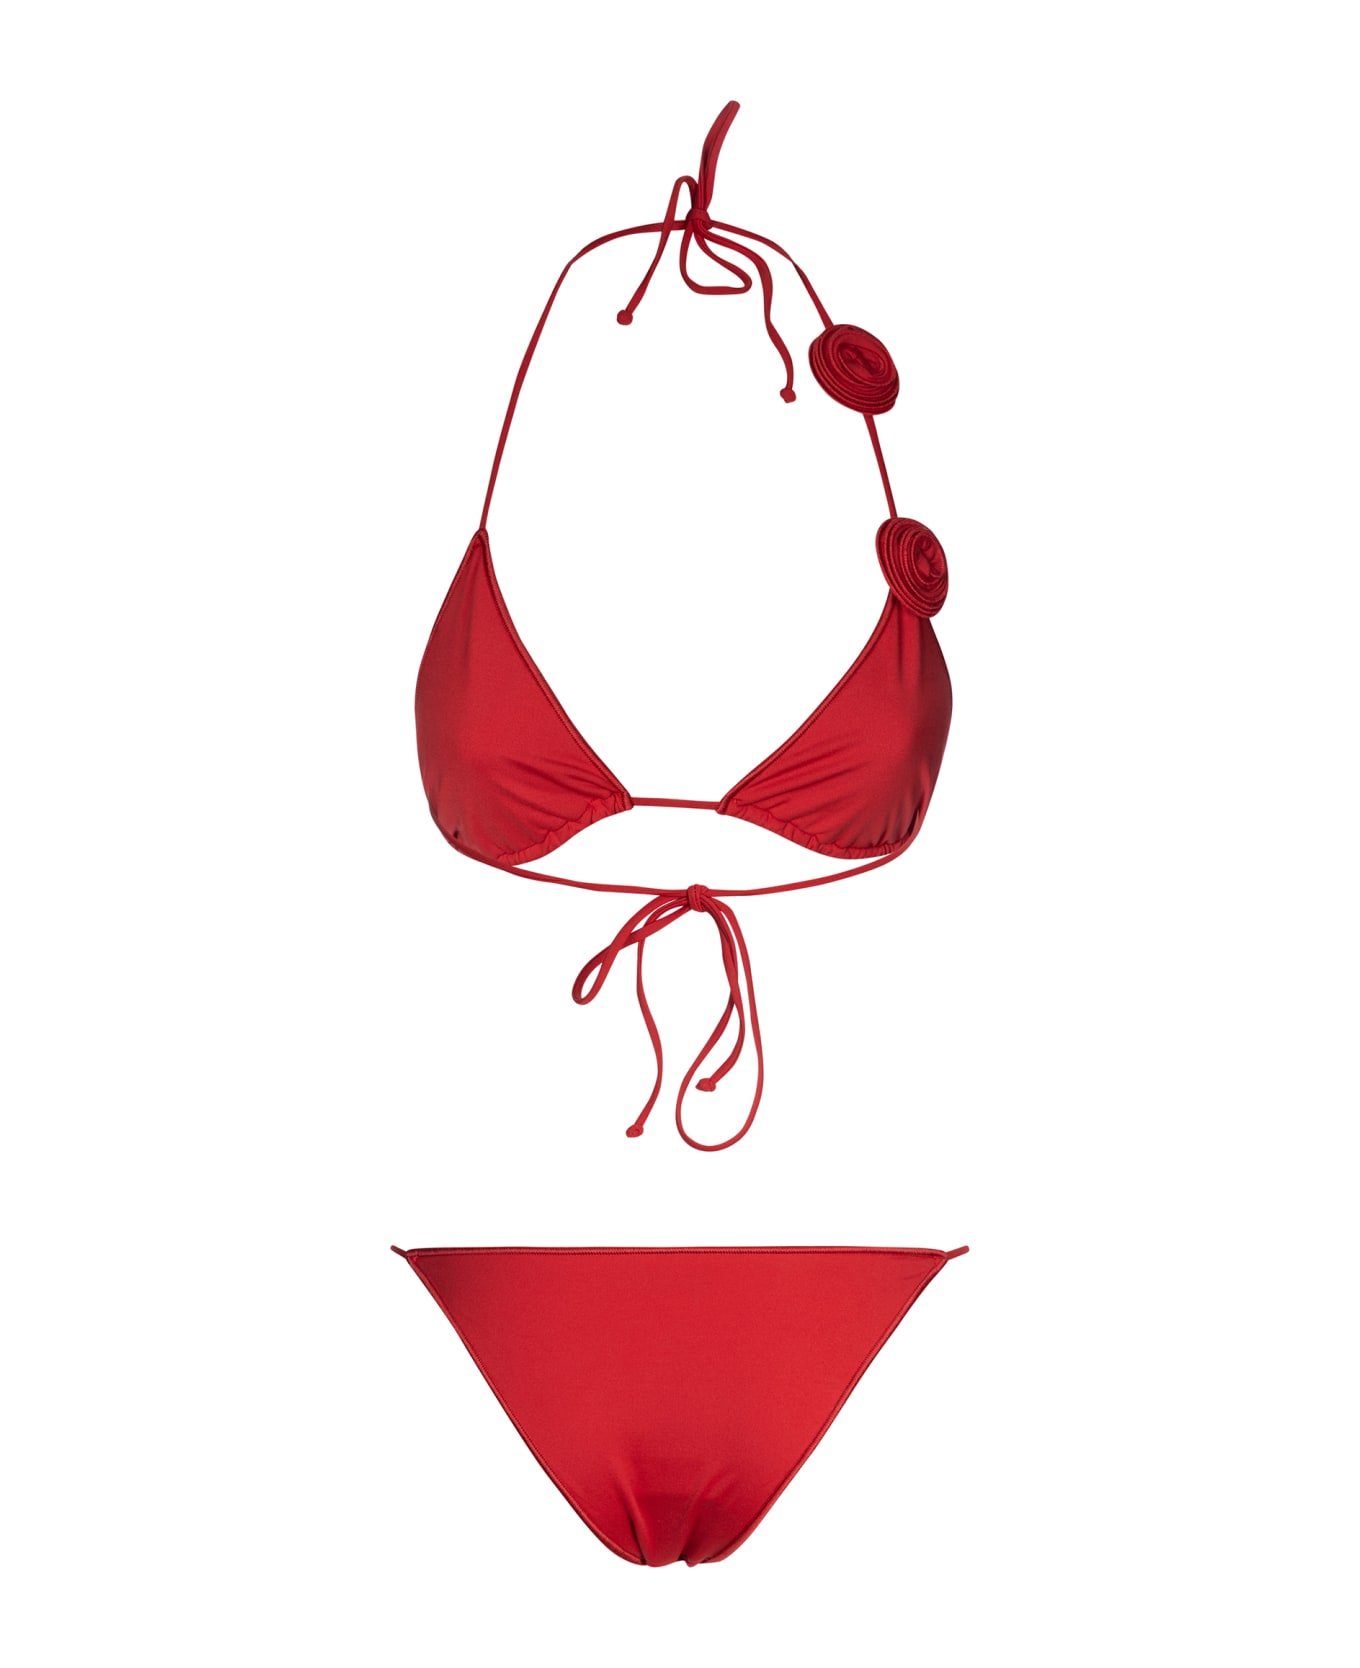 La Reveche Ashar Two-piece Bikini - Red/Blue